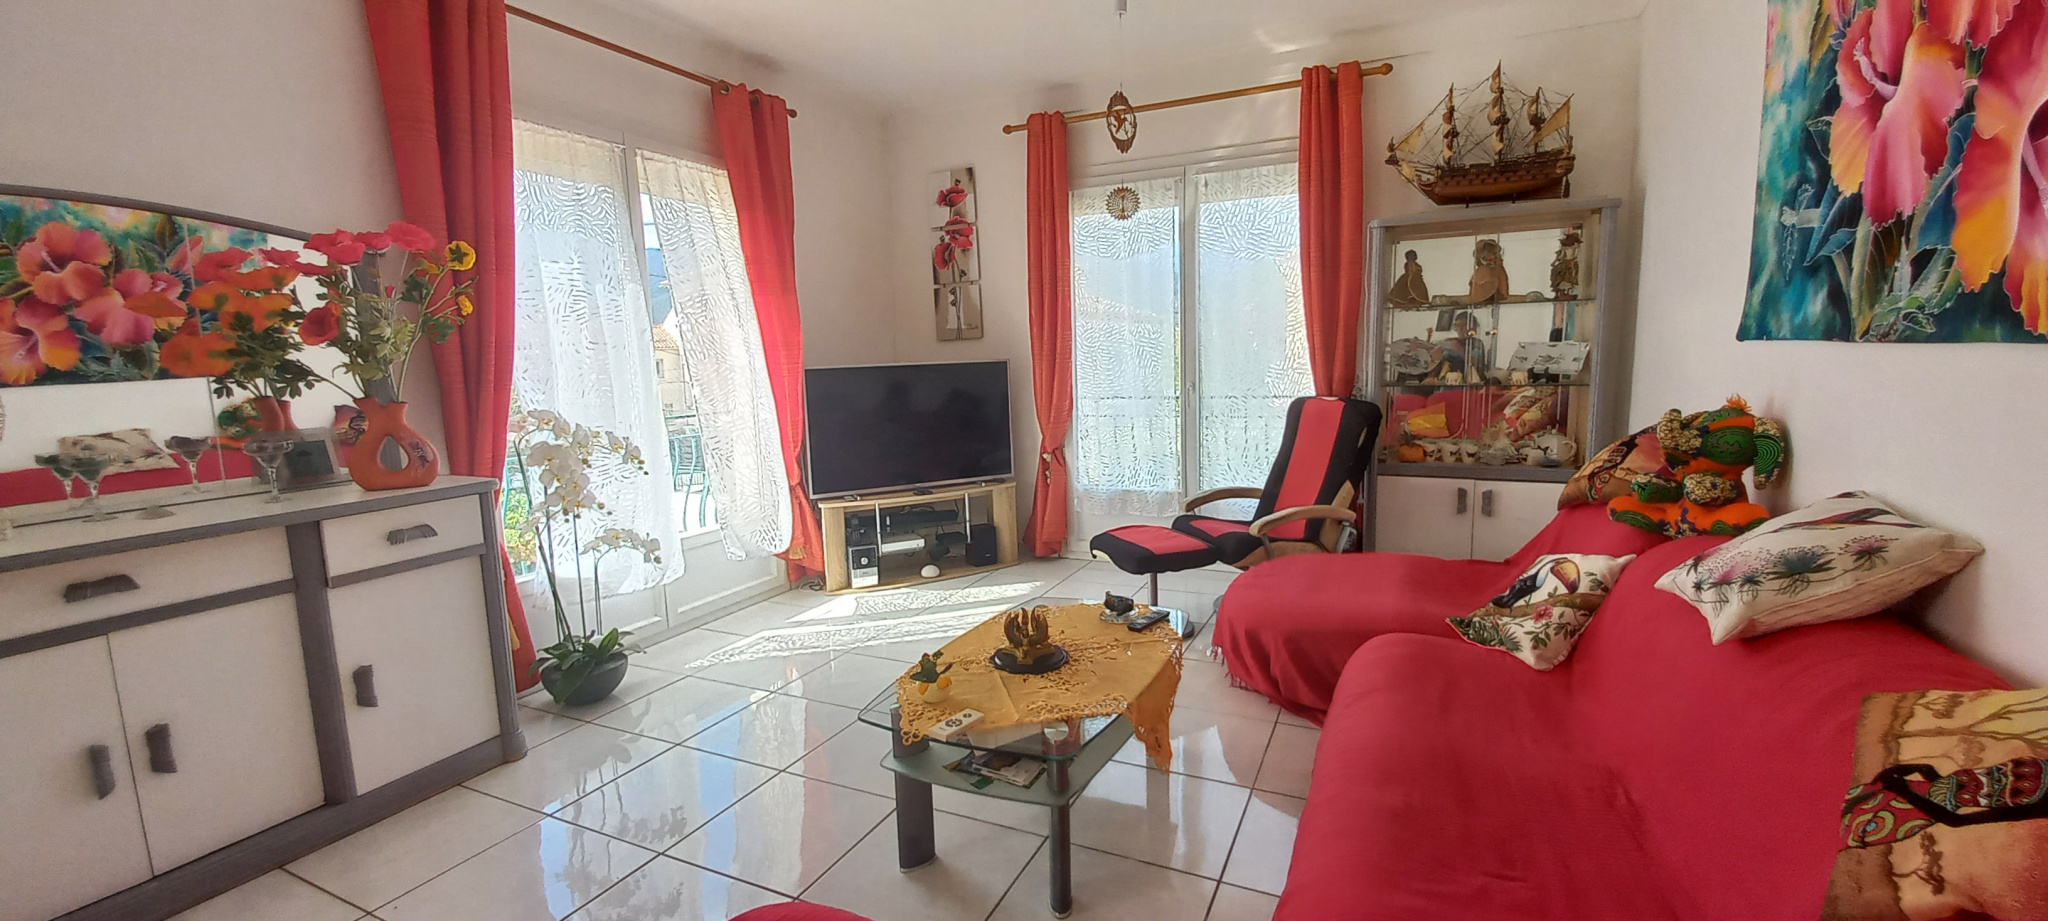 À vendre maison/villa de 140m2 à argelès-sur-mer (66700) - Photo 9'